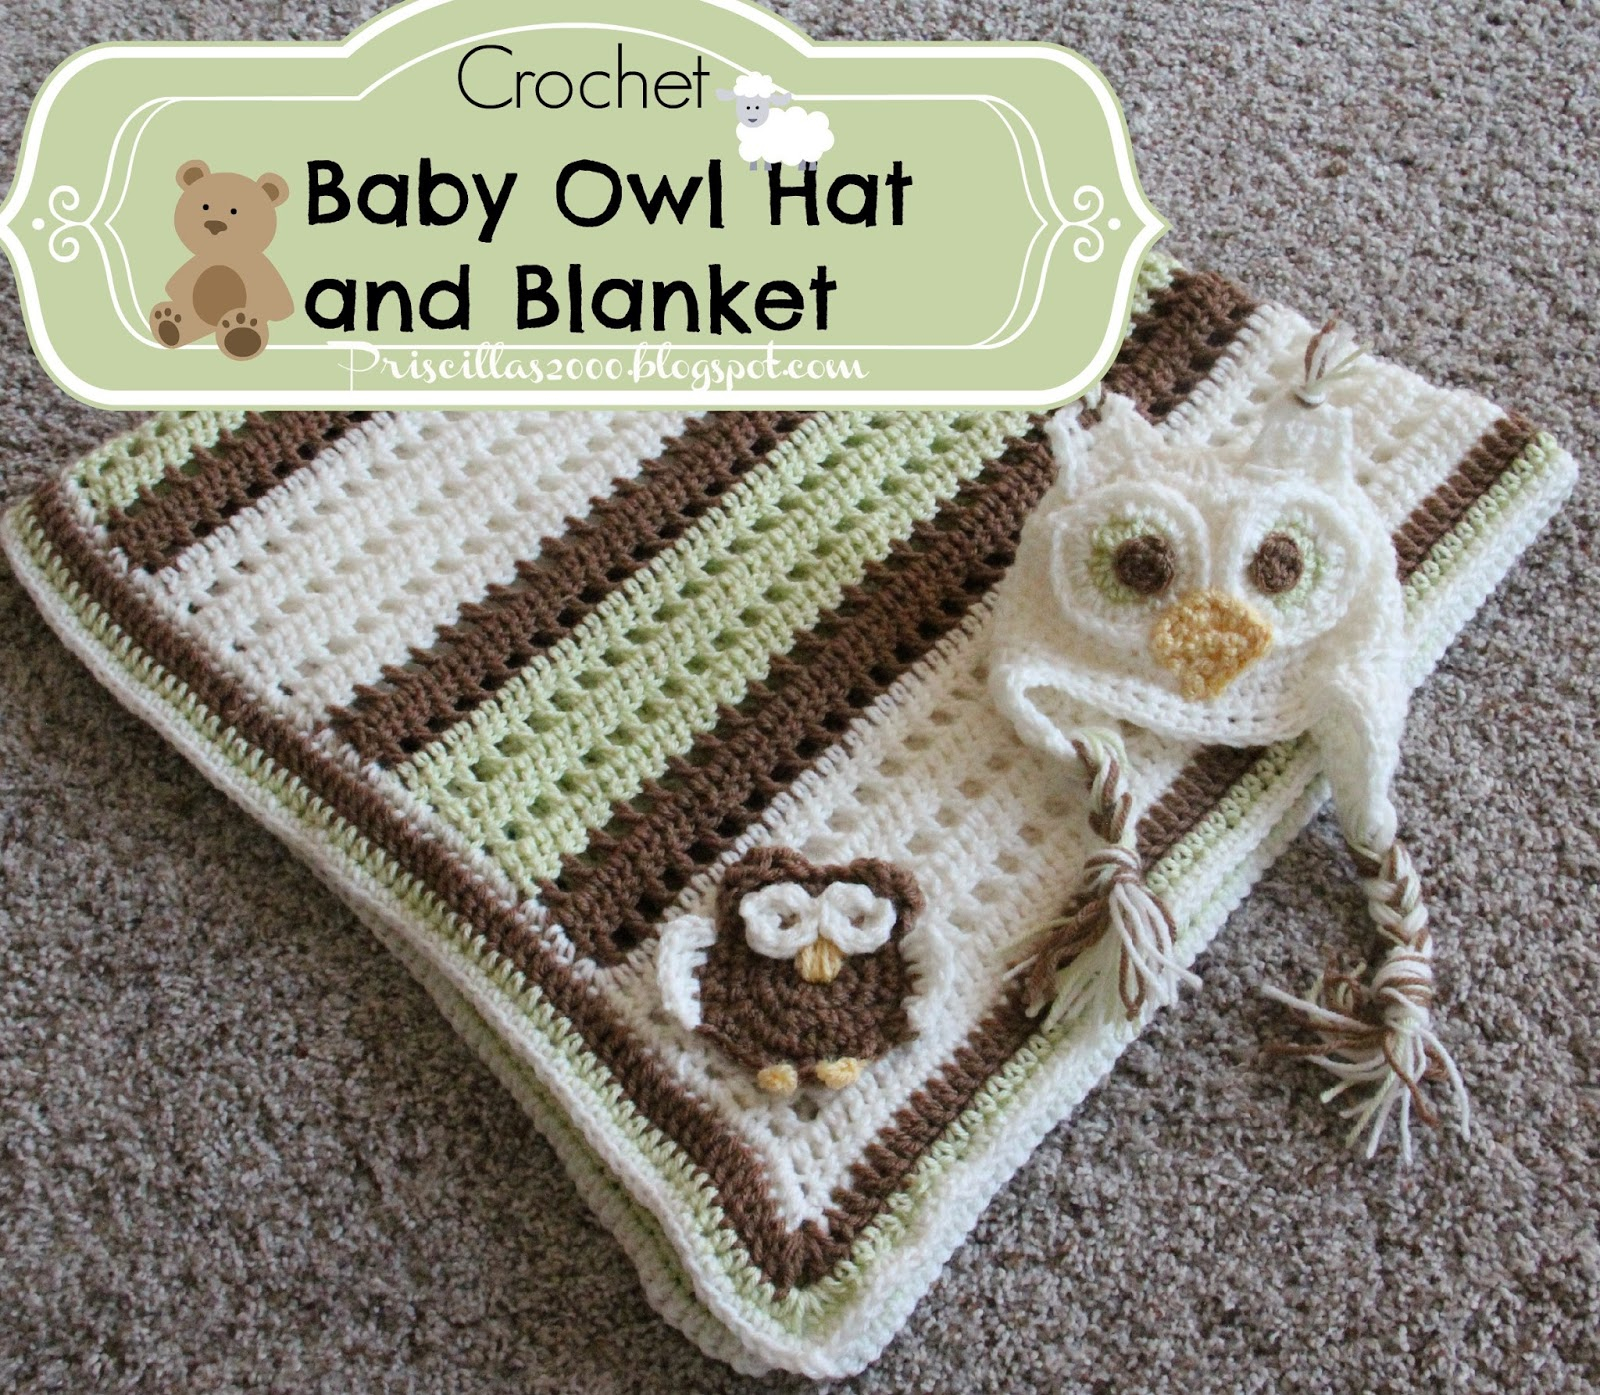 Free Crochet Baby Owl Hat Pattern Priscillas Crochetba Boy Owl Blanket And Hat